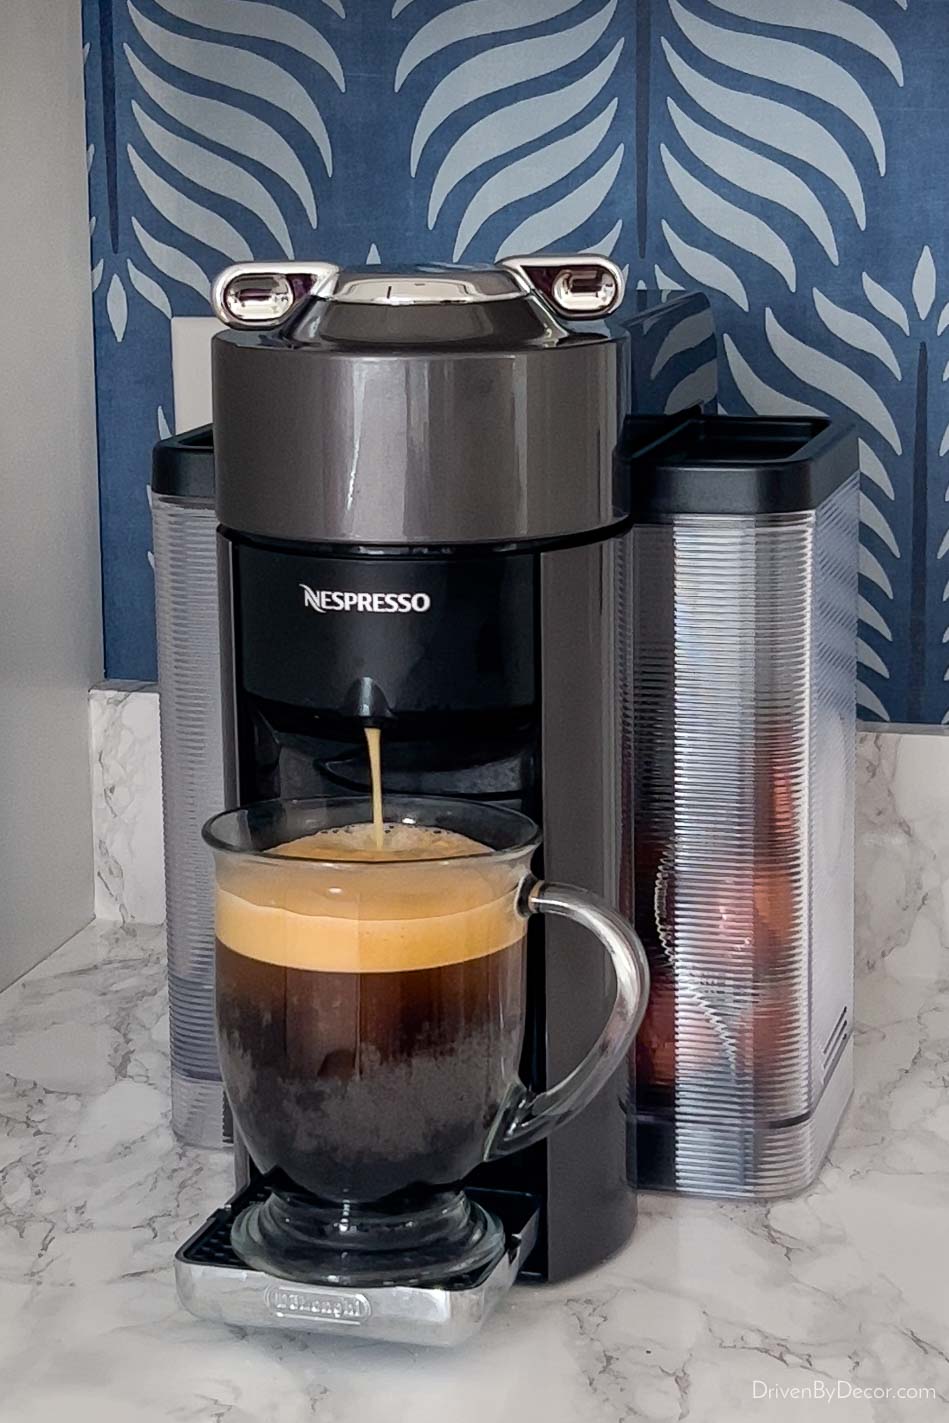 Nespresso coffee maker